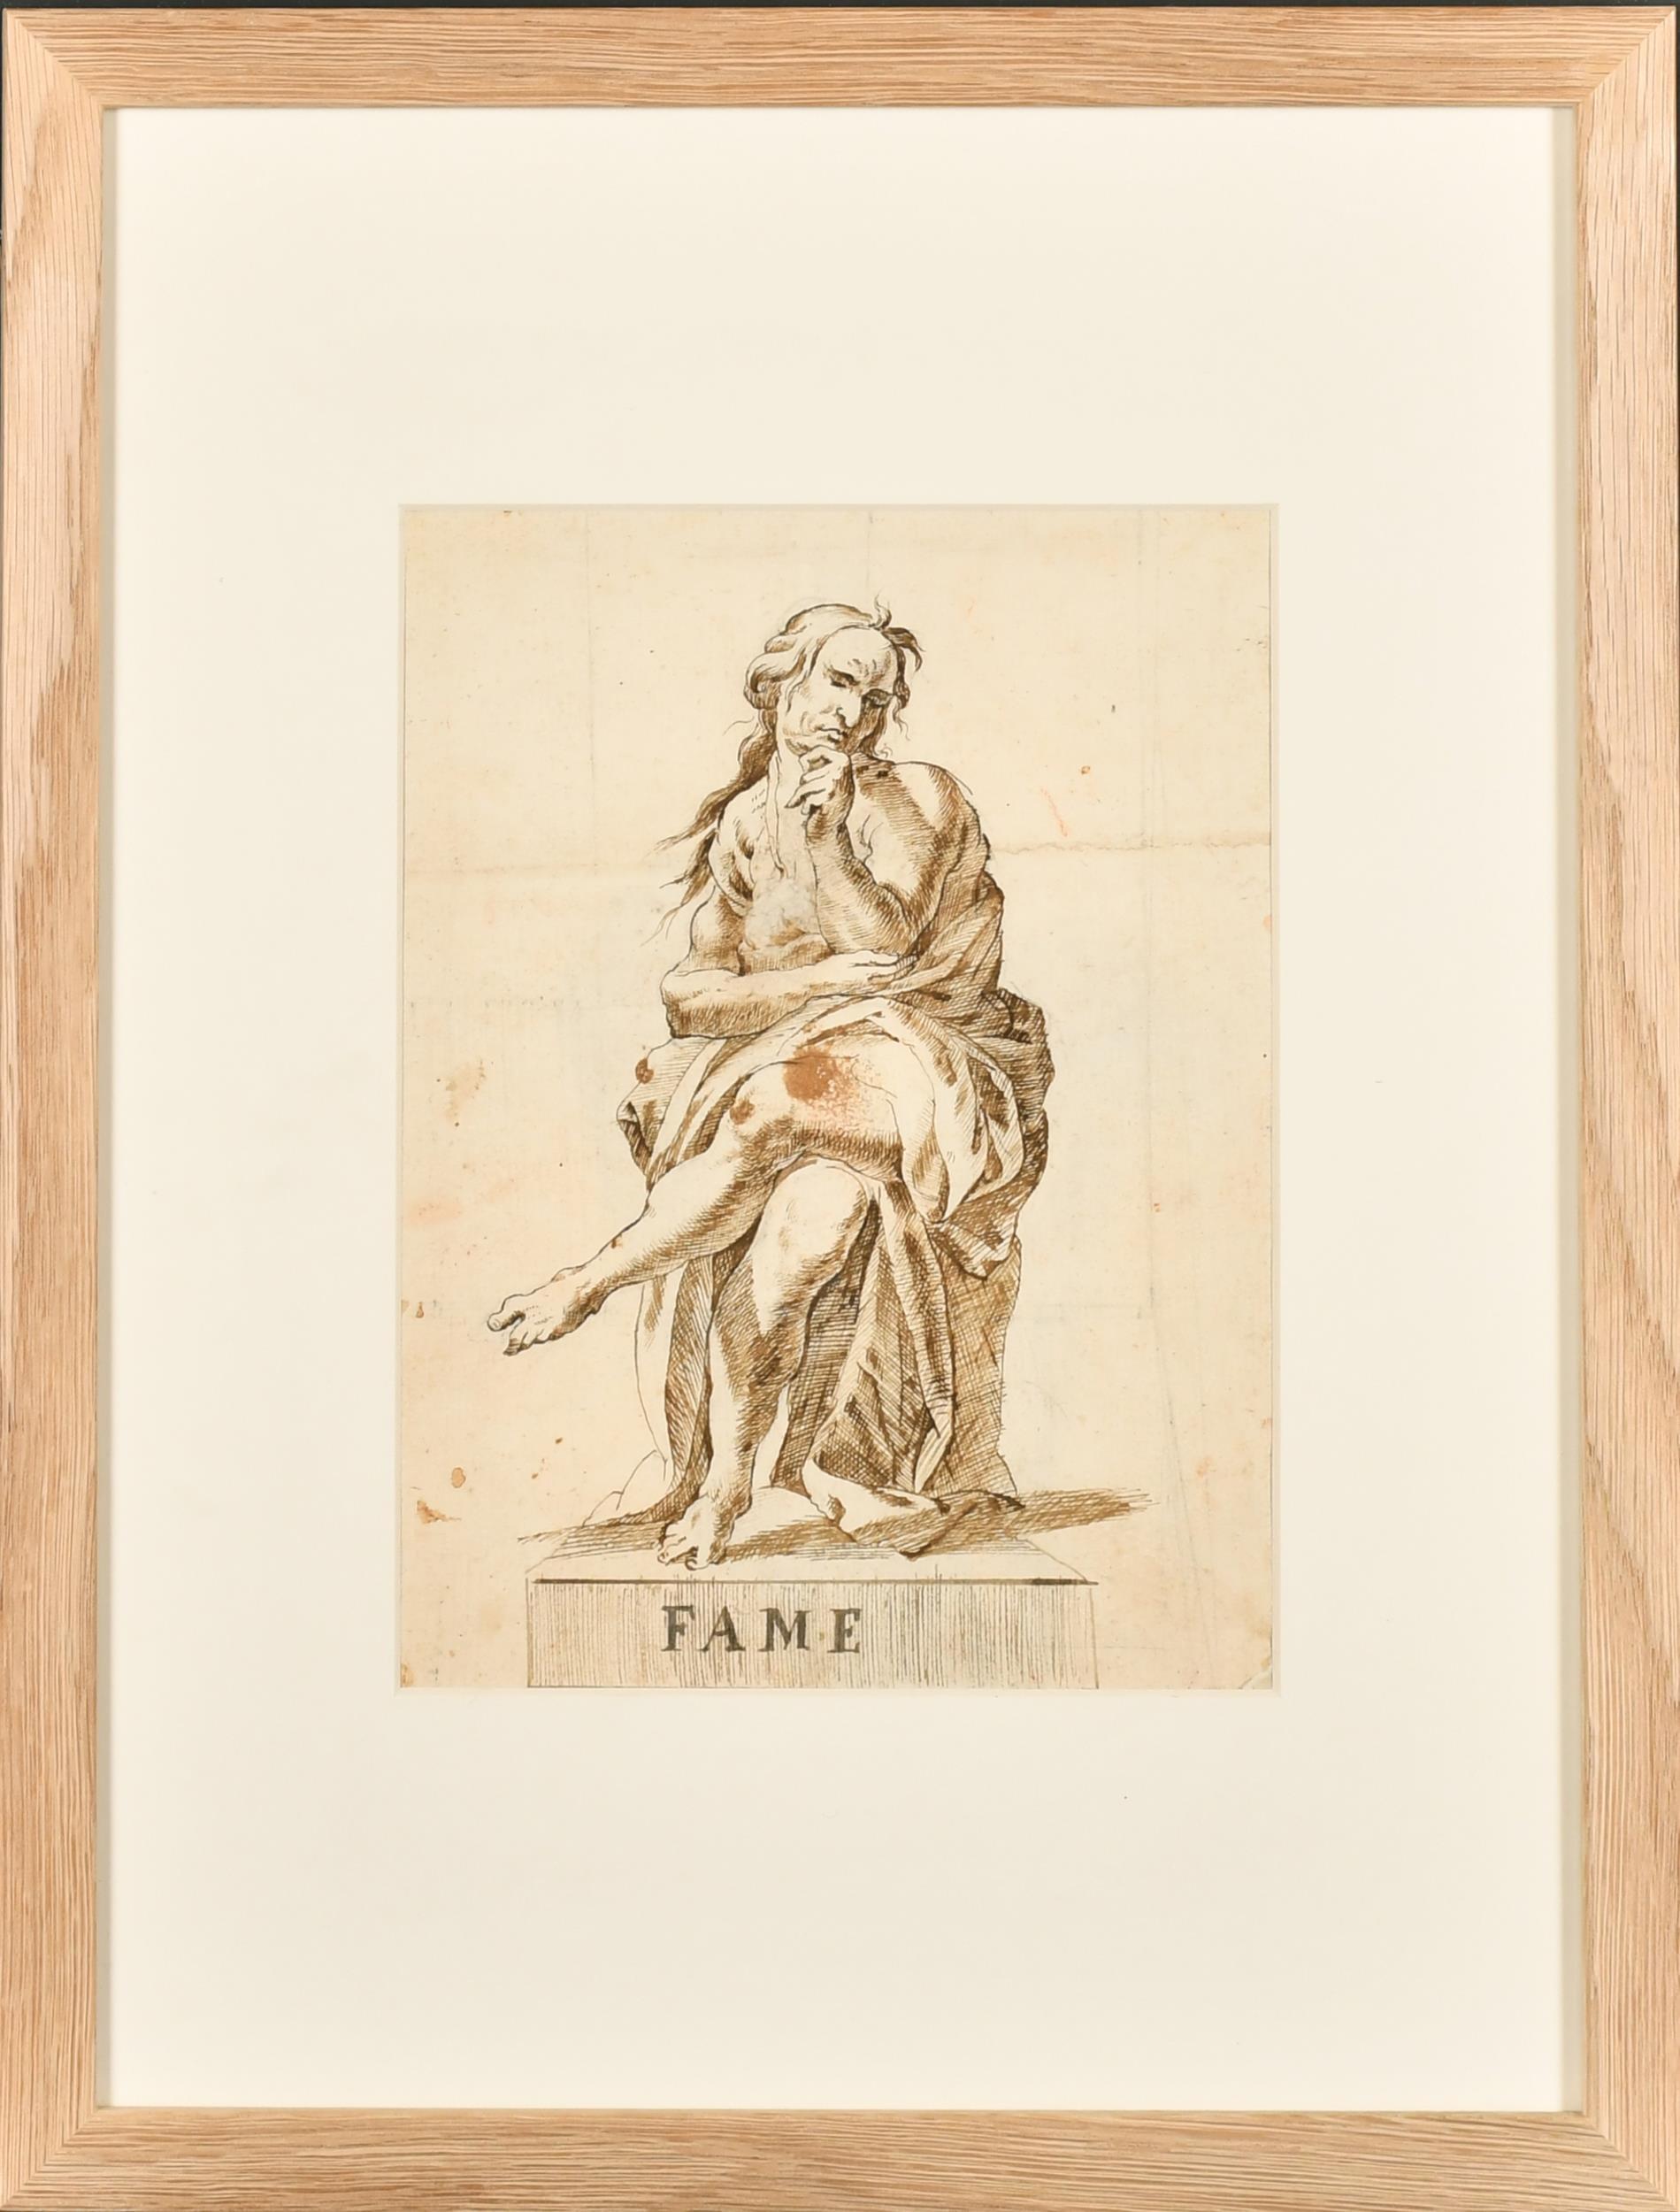 Beaux dessins à l'encre et au lavis de maîtres anciens italiens des années 1700 Figure allégorique romaine Fame - Art de 18thC Italian Old Master